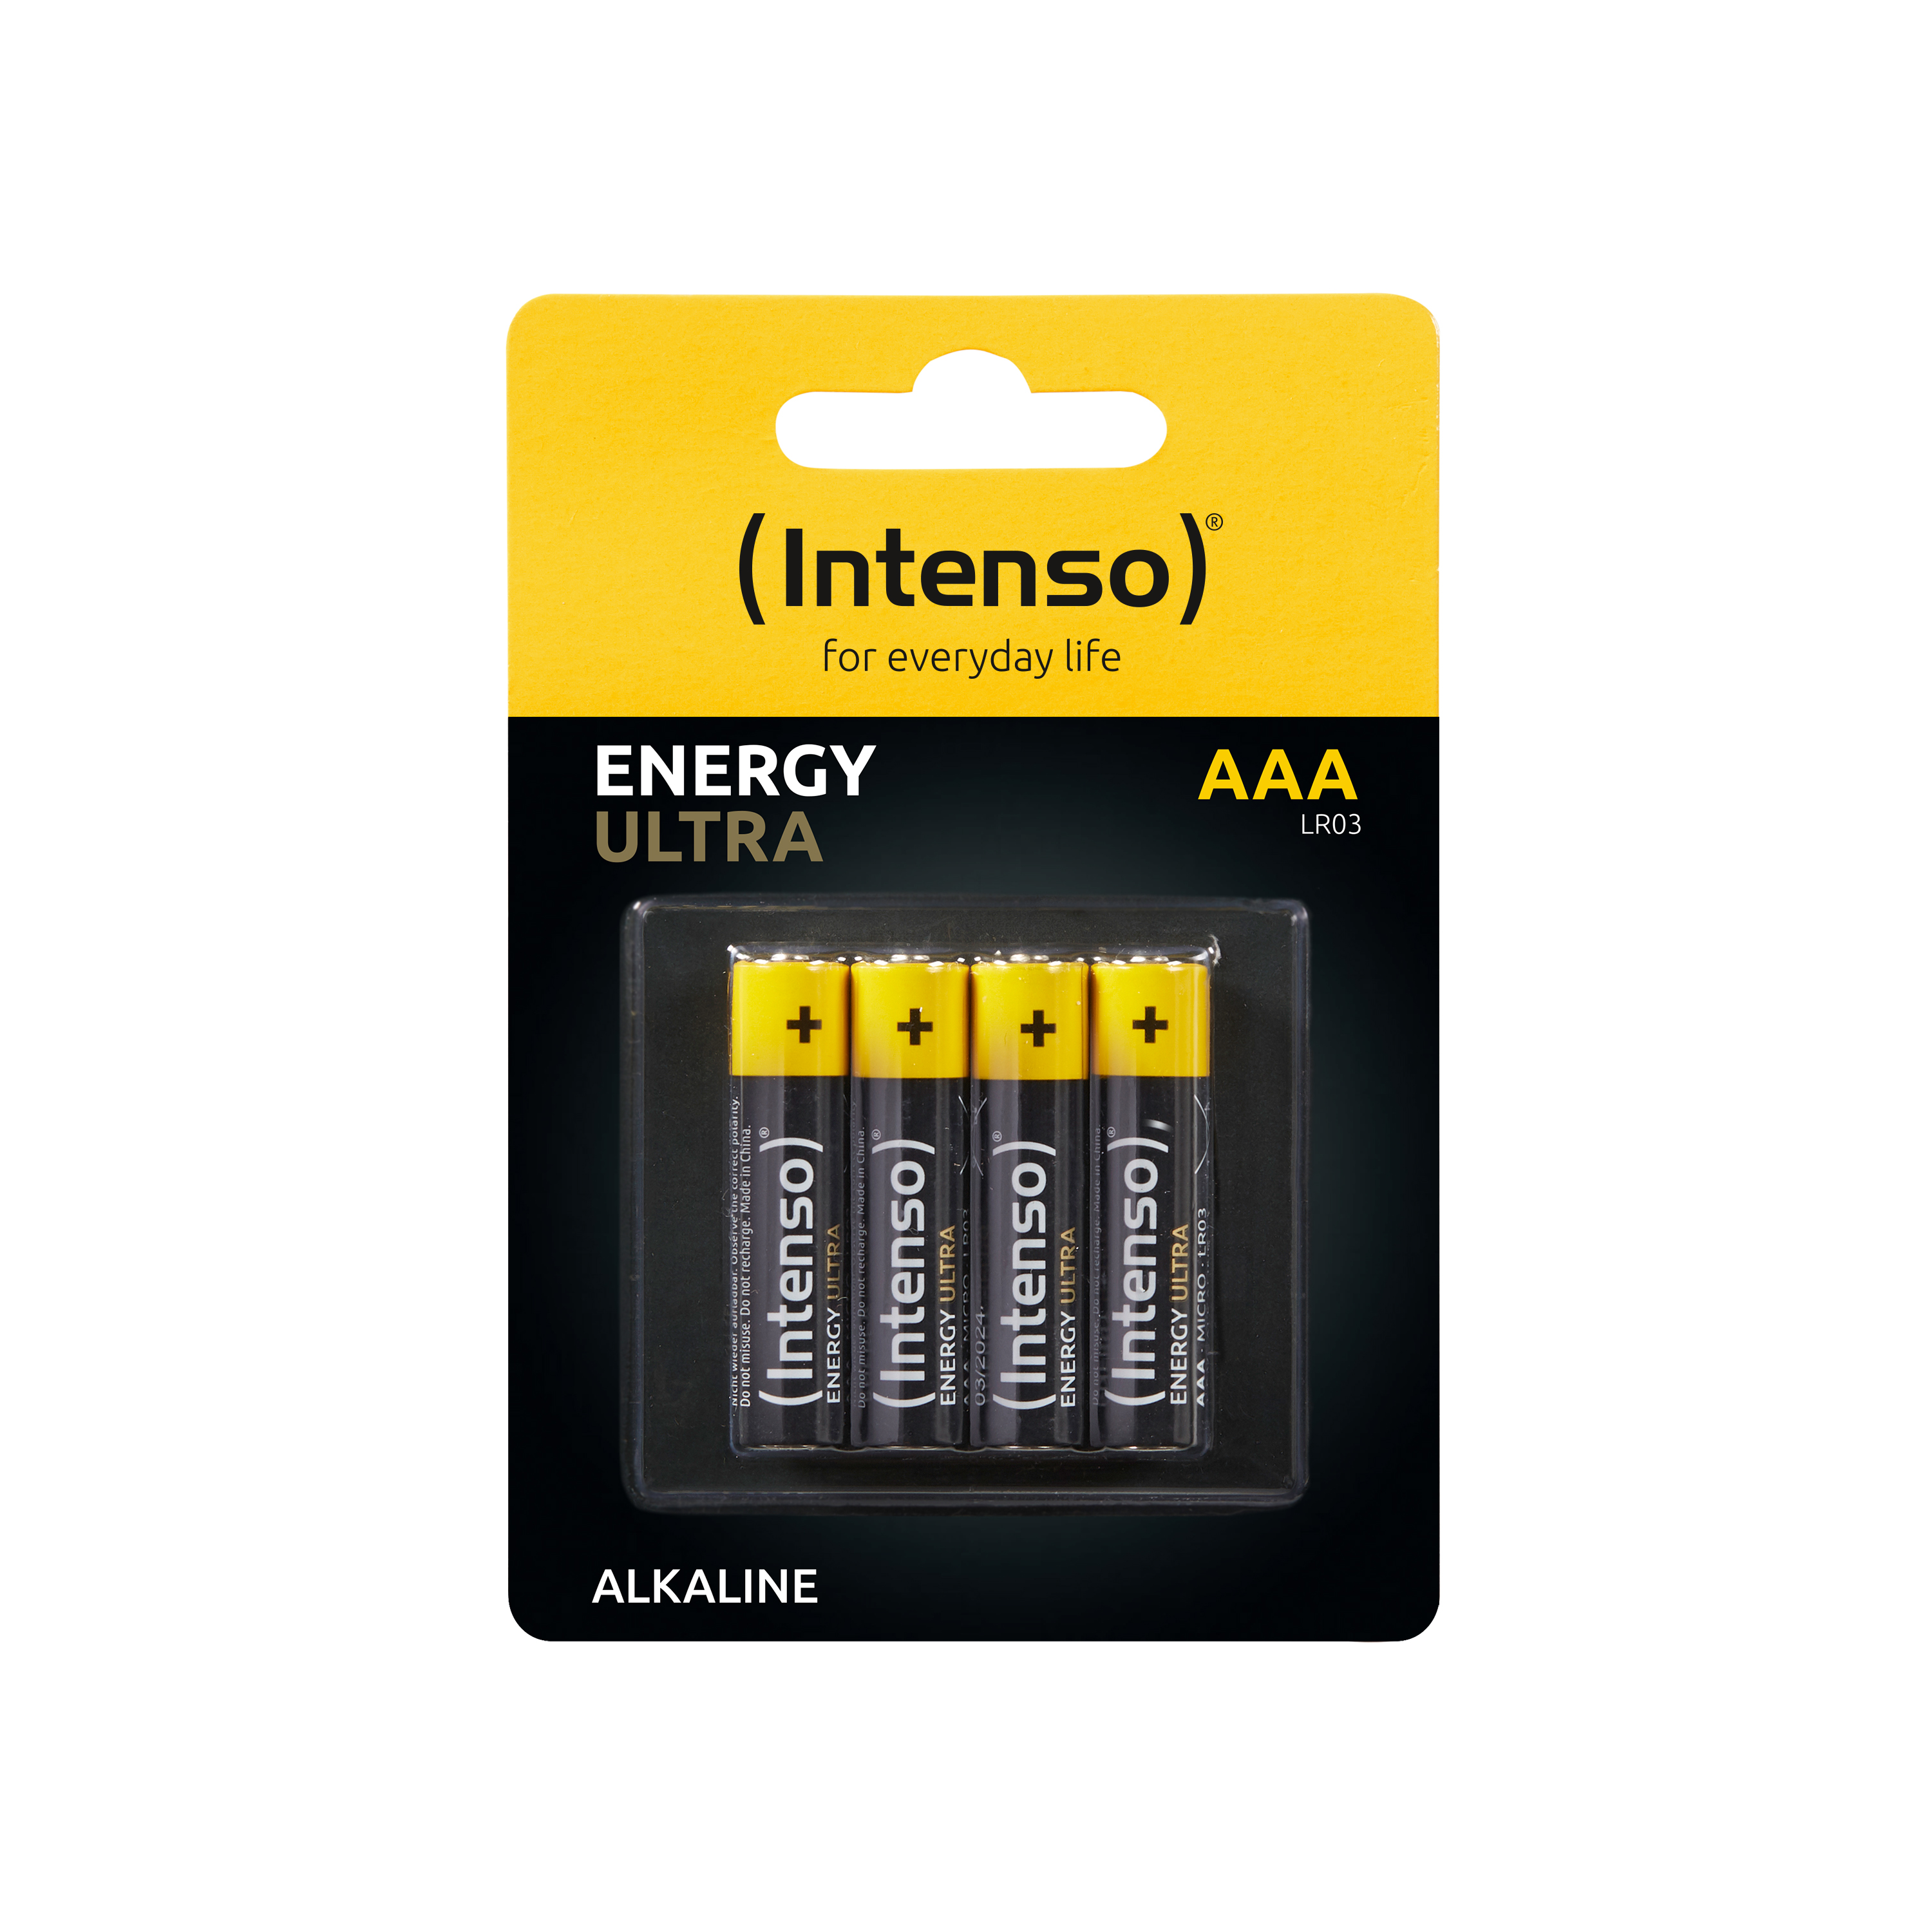 AAA Pack Manganese Batterie Energy LR03 LR03, 4er Micro INTENSO (Quecksilberfrei), AAA, Ultra Alkaline